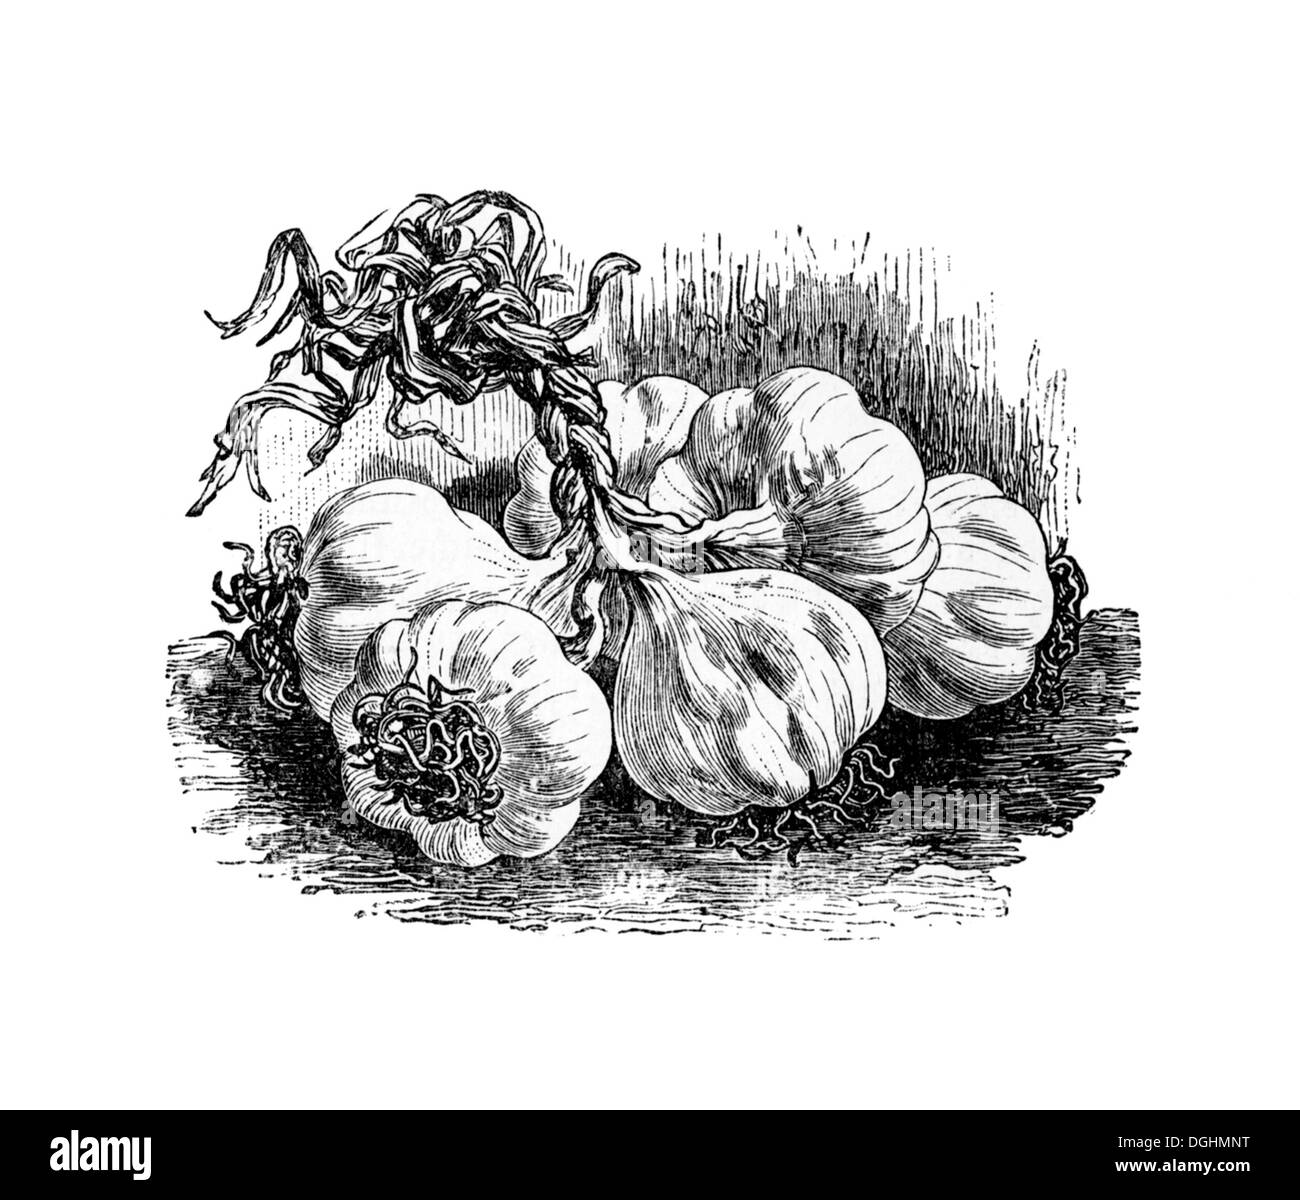 Aglio, storico illustrazione da: Theodore Long: Generale illustrato libro giardino, Vol 2, Lipsia 1902, p. 143, Figura 141 Foto Stock